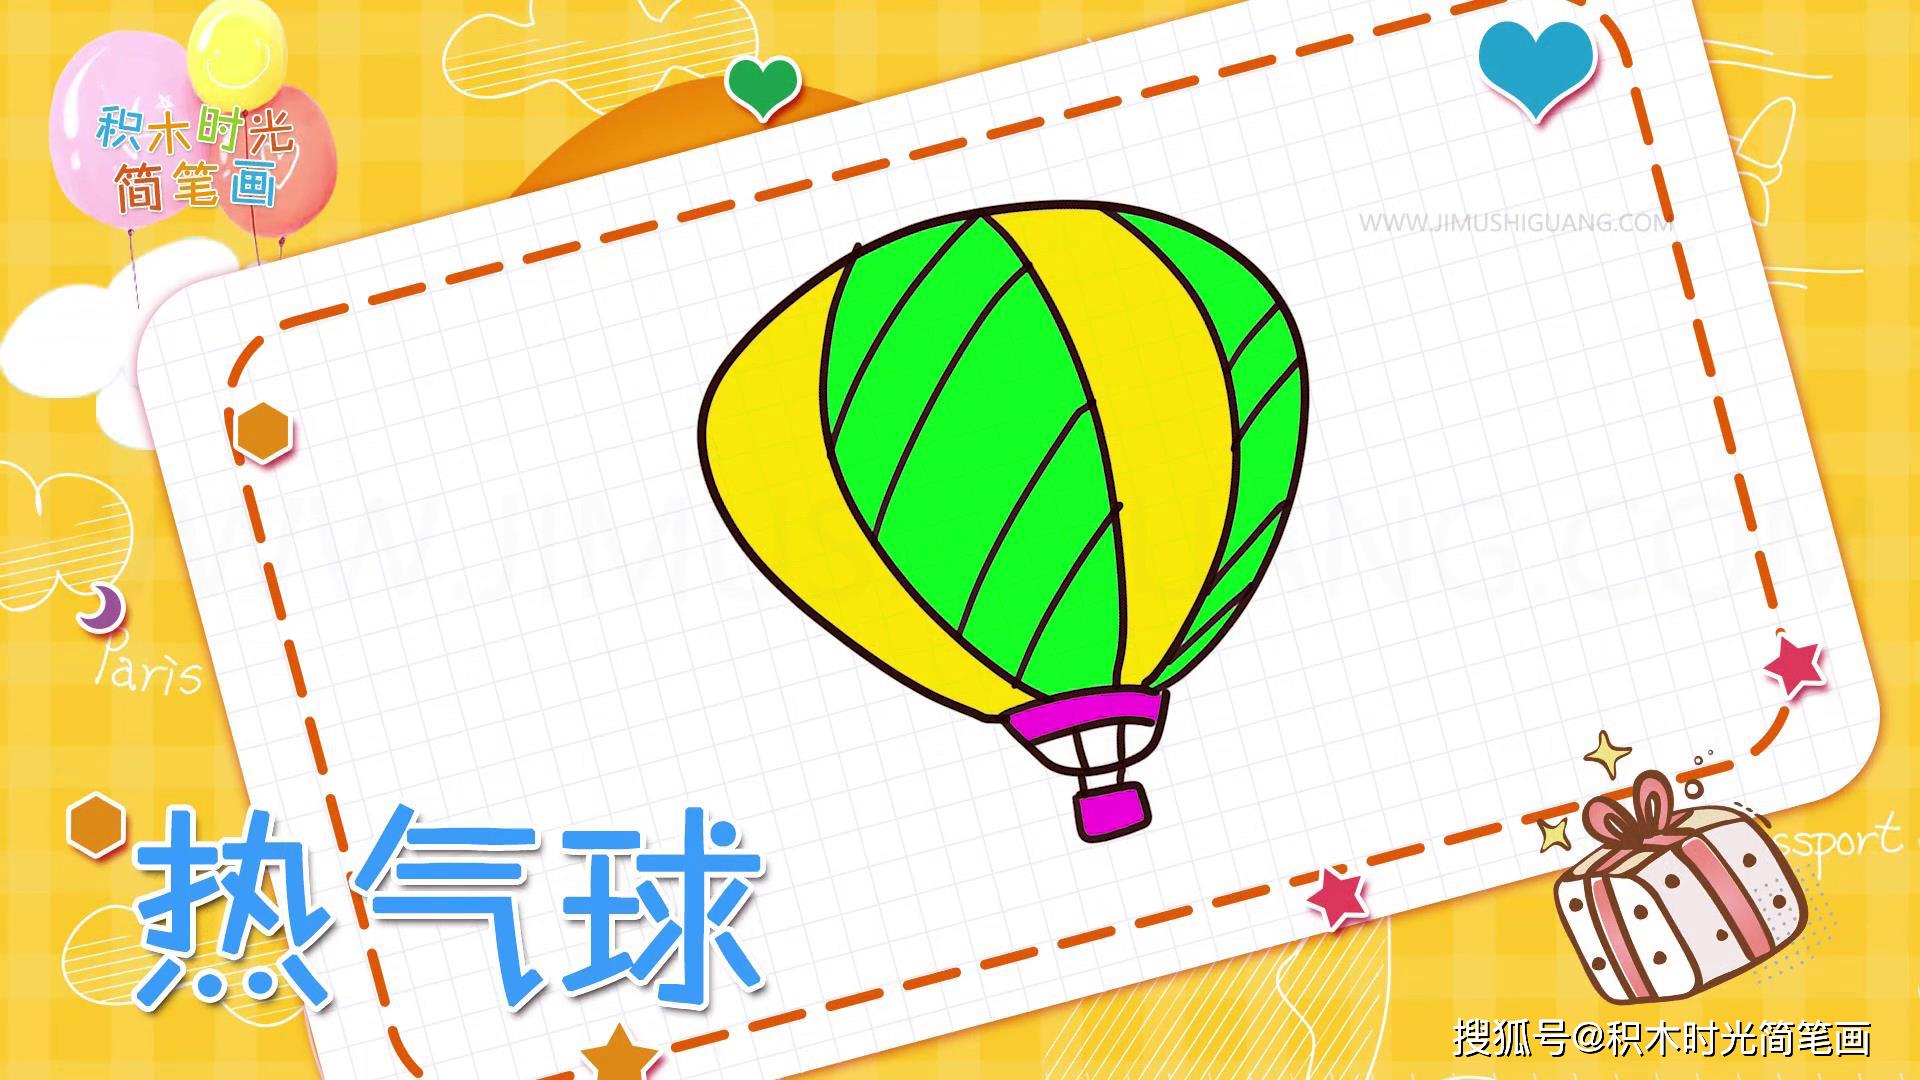 经典的热气球简笔画线稿,你喜欢那一张?